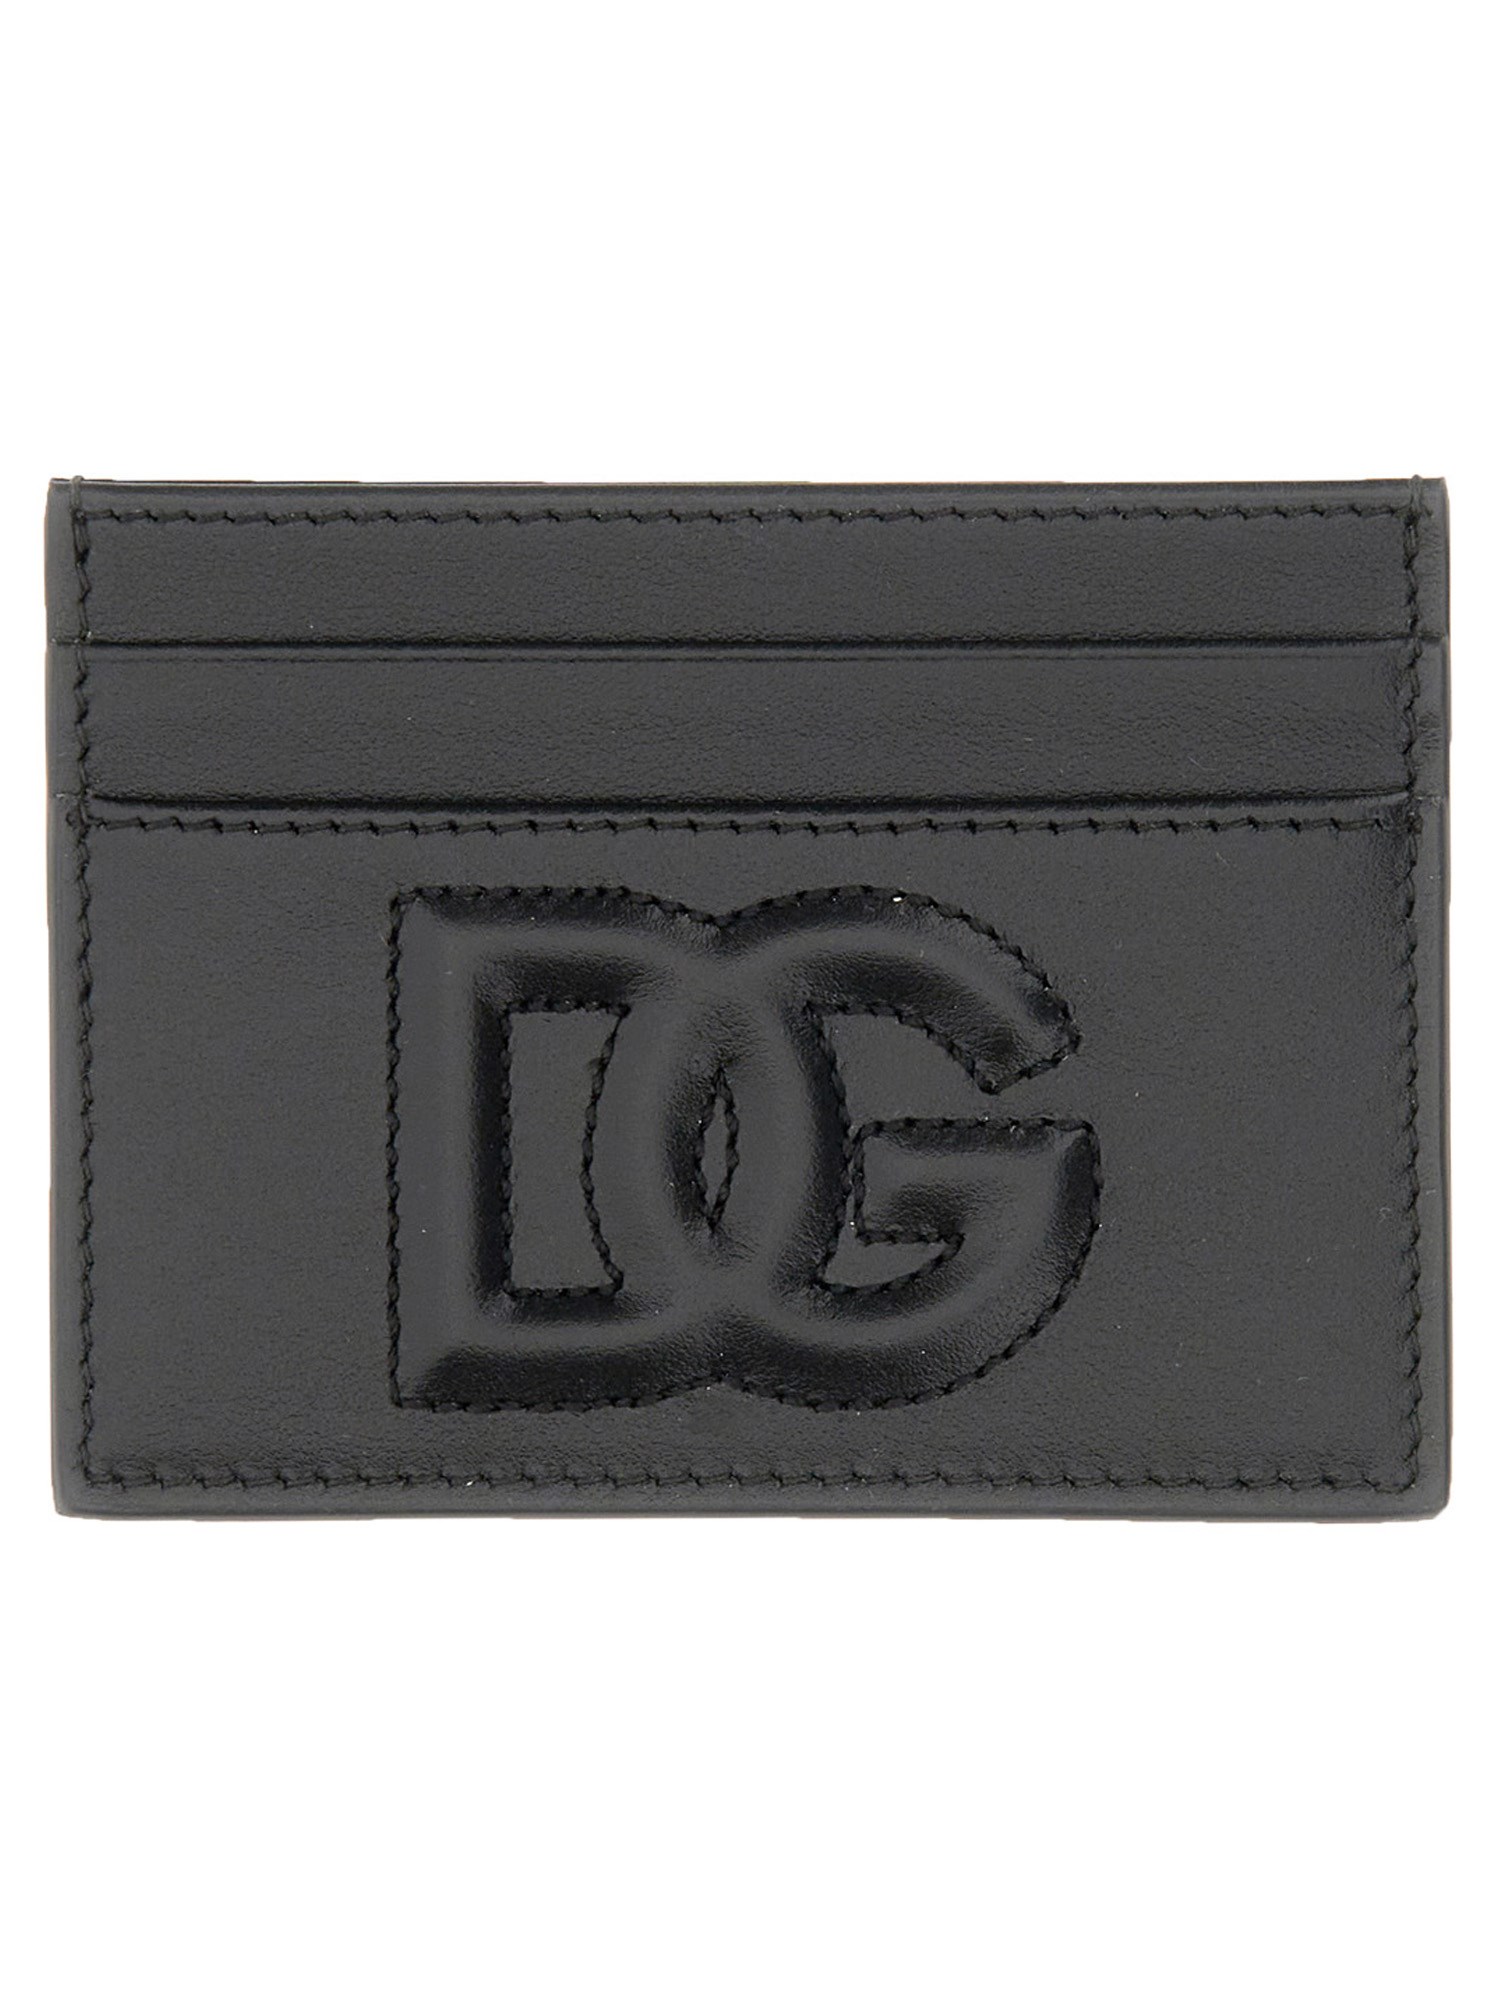 dolce & gabbana leather card holder